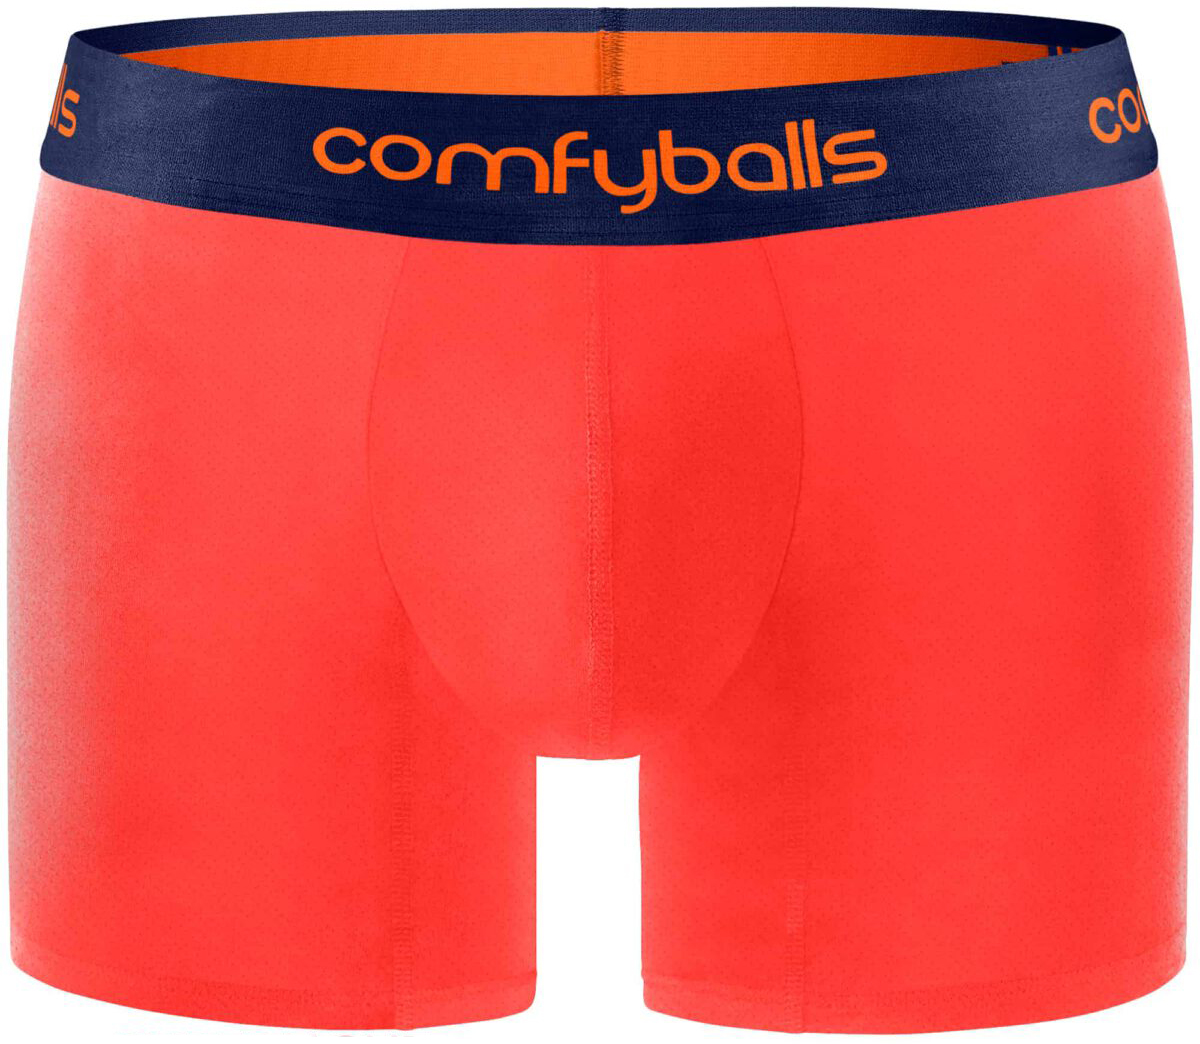 Comfyballs Performance SL Boxer Brief Underwear